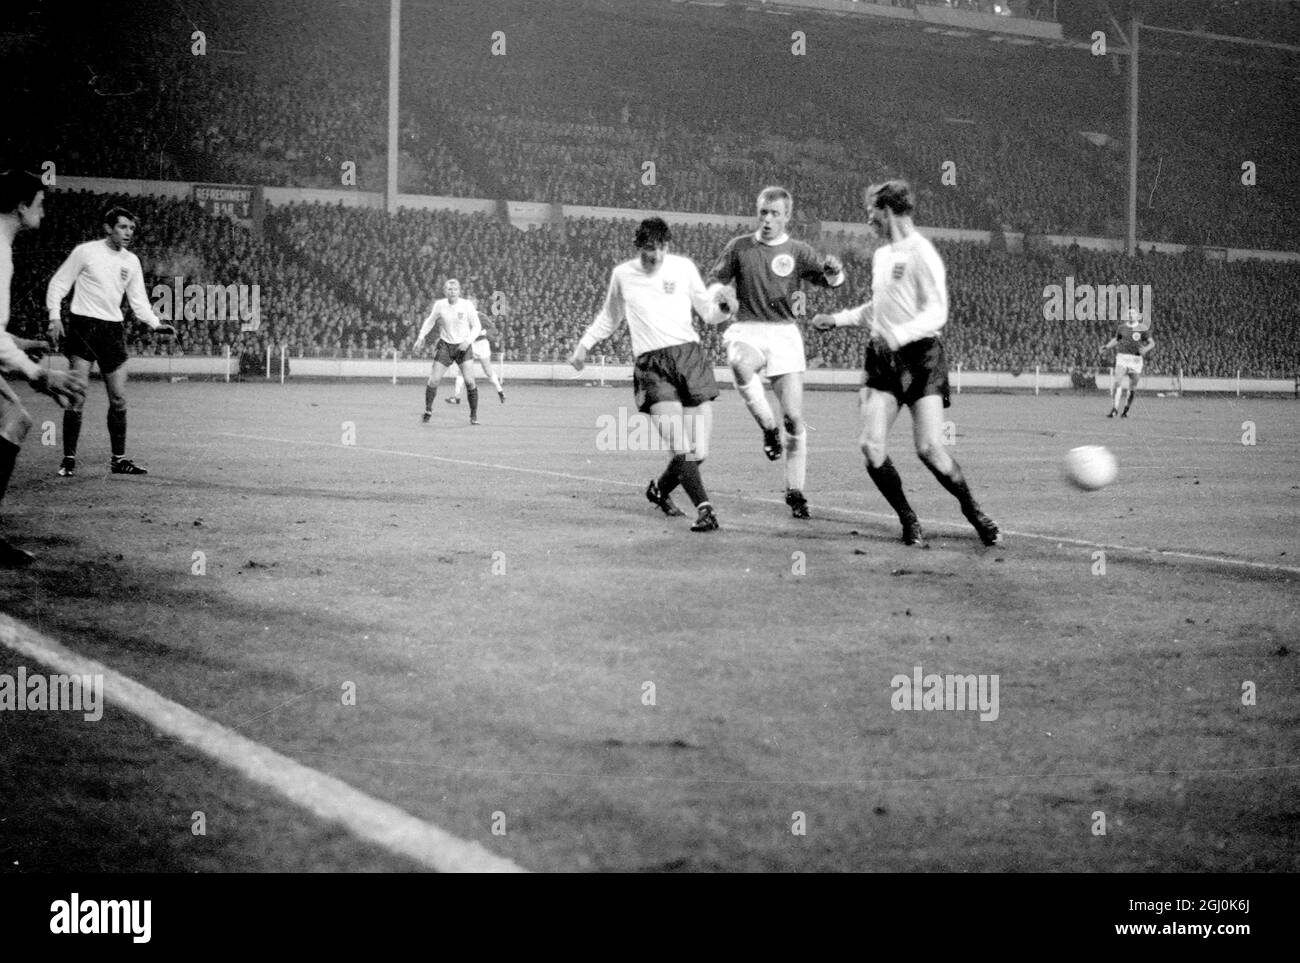 Wembley, Middlesex: Le gardien de but de l'Angleterre et de la ville de Leicester G. Banks; (à gauche); et le joueur de Leeds United Jackie Charlton (au centre) (au centre) et l'Allemagne de l'Ouest et le F.C. Le joueur de Cologne H. Hornig (à l'extérieur gauche) est en action pendant le match international de l'Association à l'Empire Pool entre l'Allemagne et l'Angleterre , sont en action pendant le match. Le match a été joué sous une forte pluie, dans des conditions brumeuses; a été regardé par une foule estimée à 50,000. Le score final était de 1 -0 pour l'Angleterre, le but étant marqué par le centre avant Stiles en 41e minute. 23 février 1966 Banque D'Images